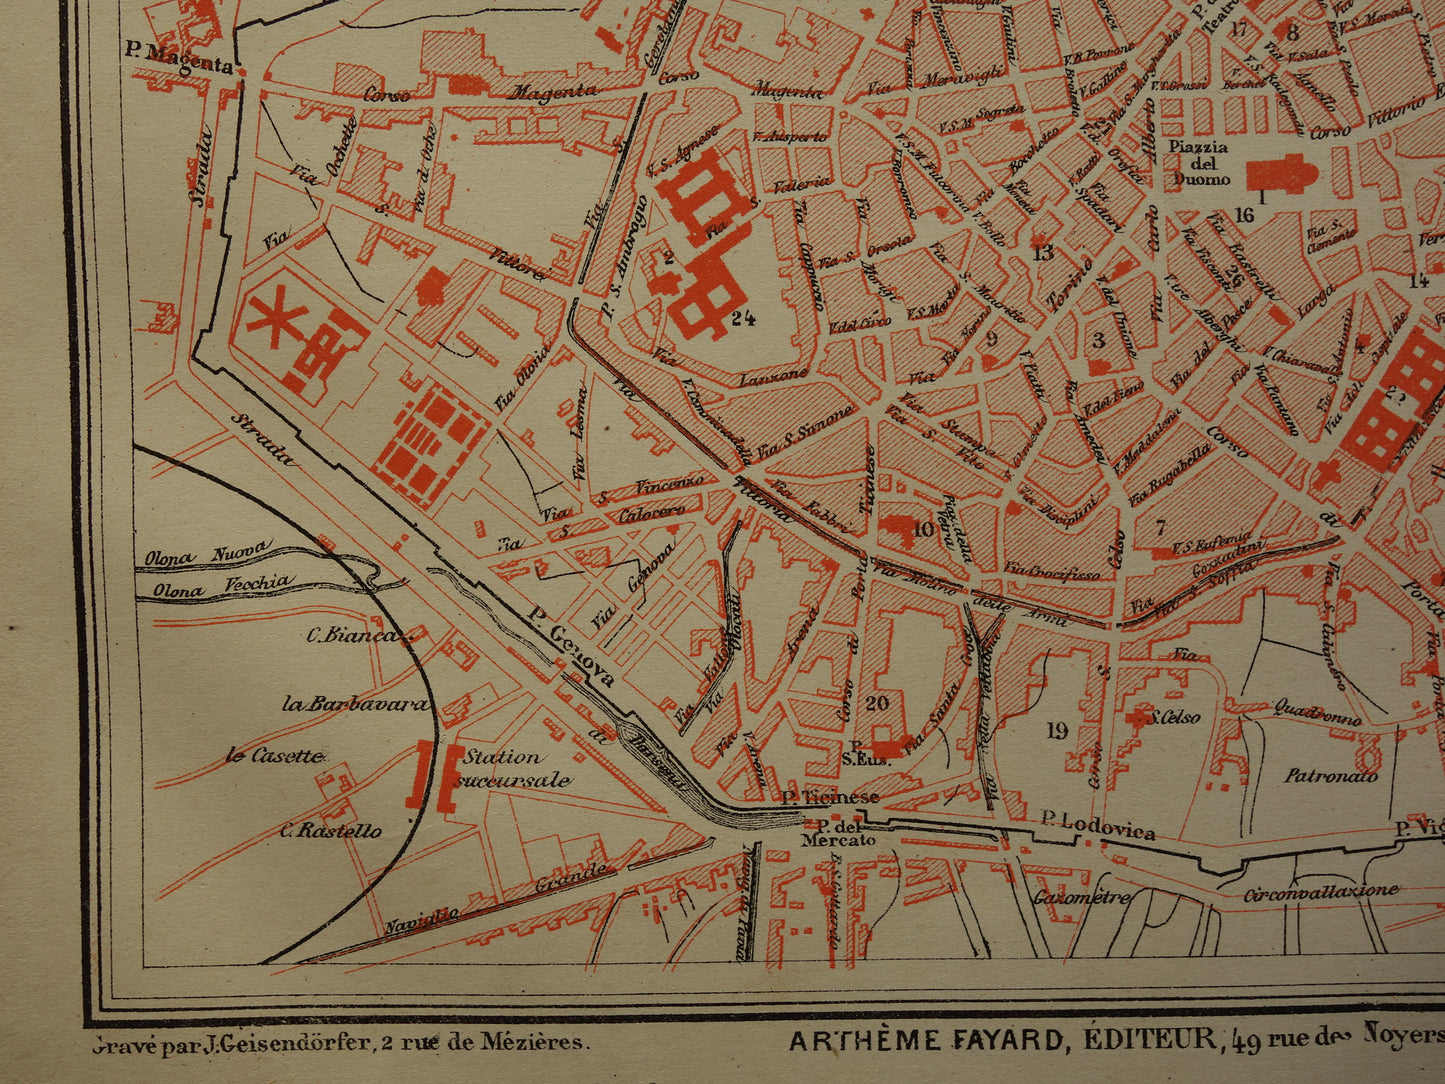 MILAAN Oude kaart van Milaan uit 1879 originele antieke Franse plattegrond historische kaarten